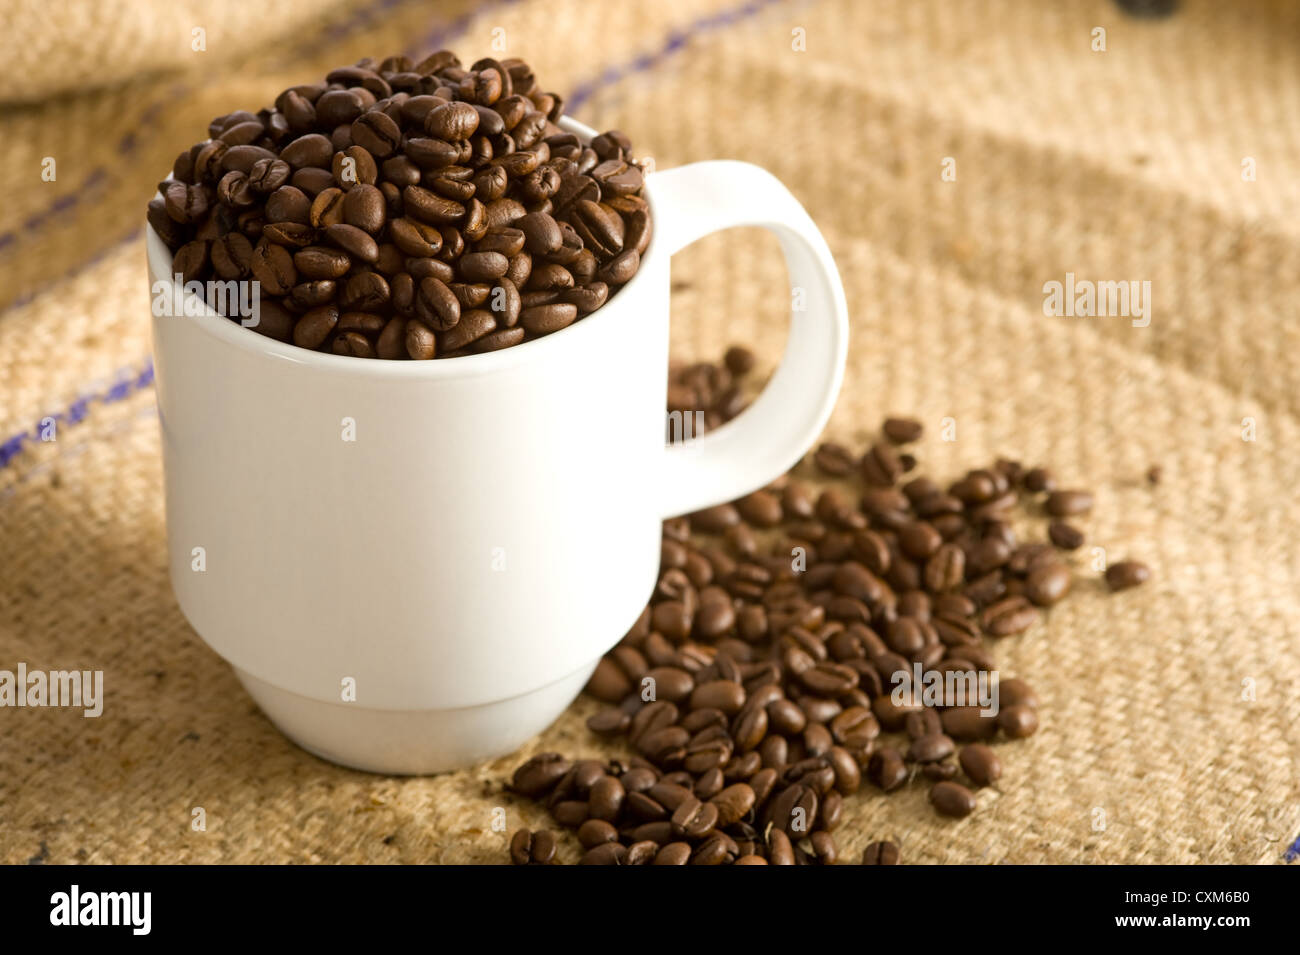 Un bianco coppa piena di caffè torrefatto in grani su una tela coffee bean bag. Sfondo con spazio di copia Foto Stock